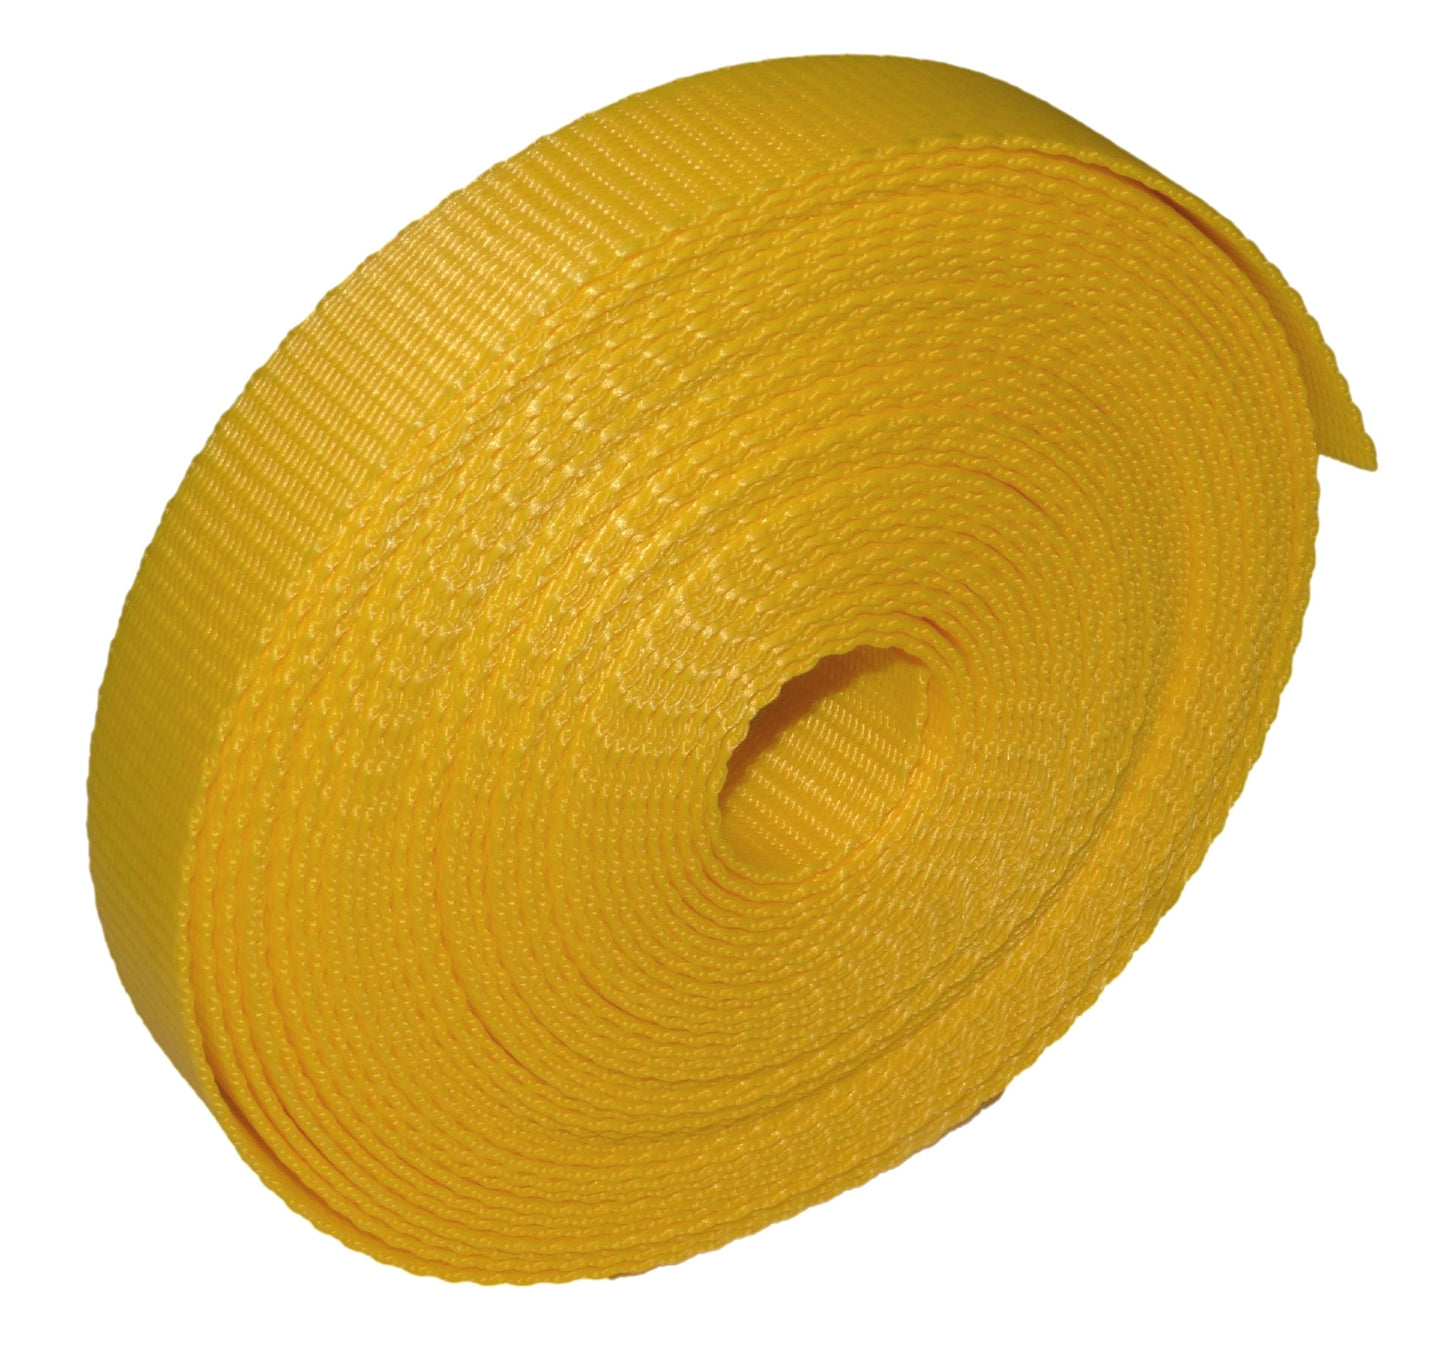 Benristraps 25mm Polypropylene Webbing, 10 metres (32') in yellow